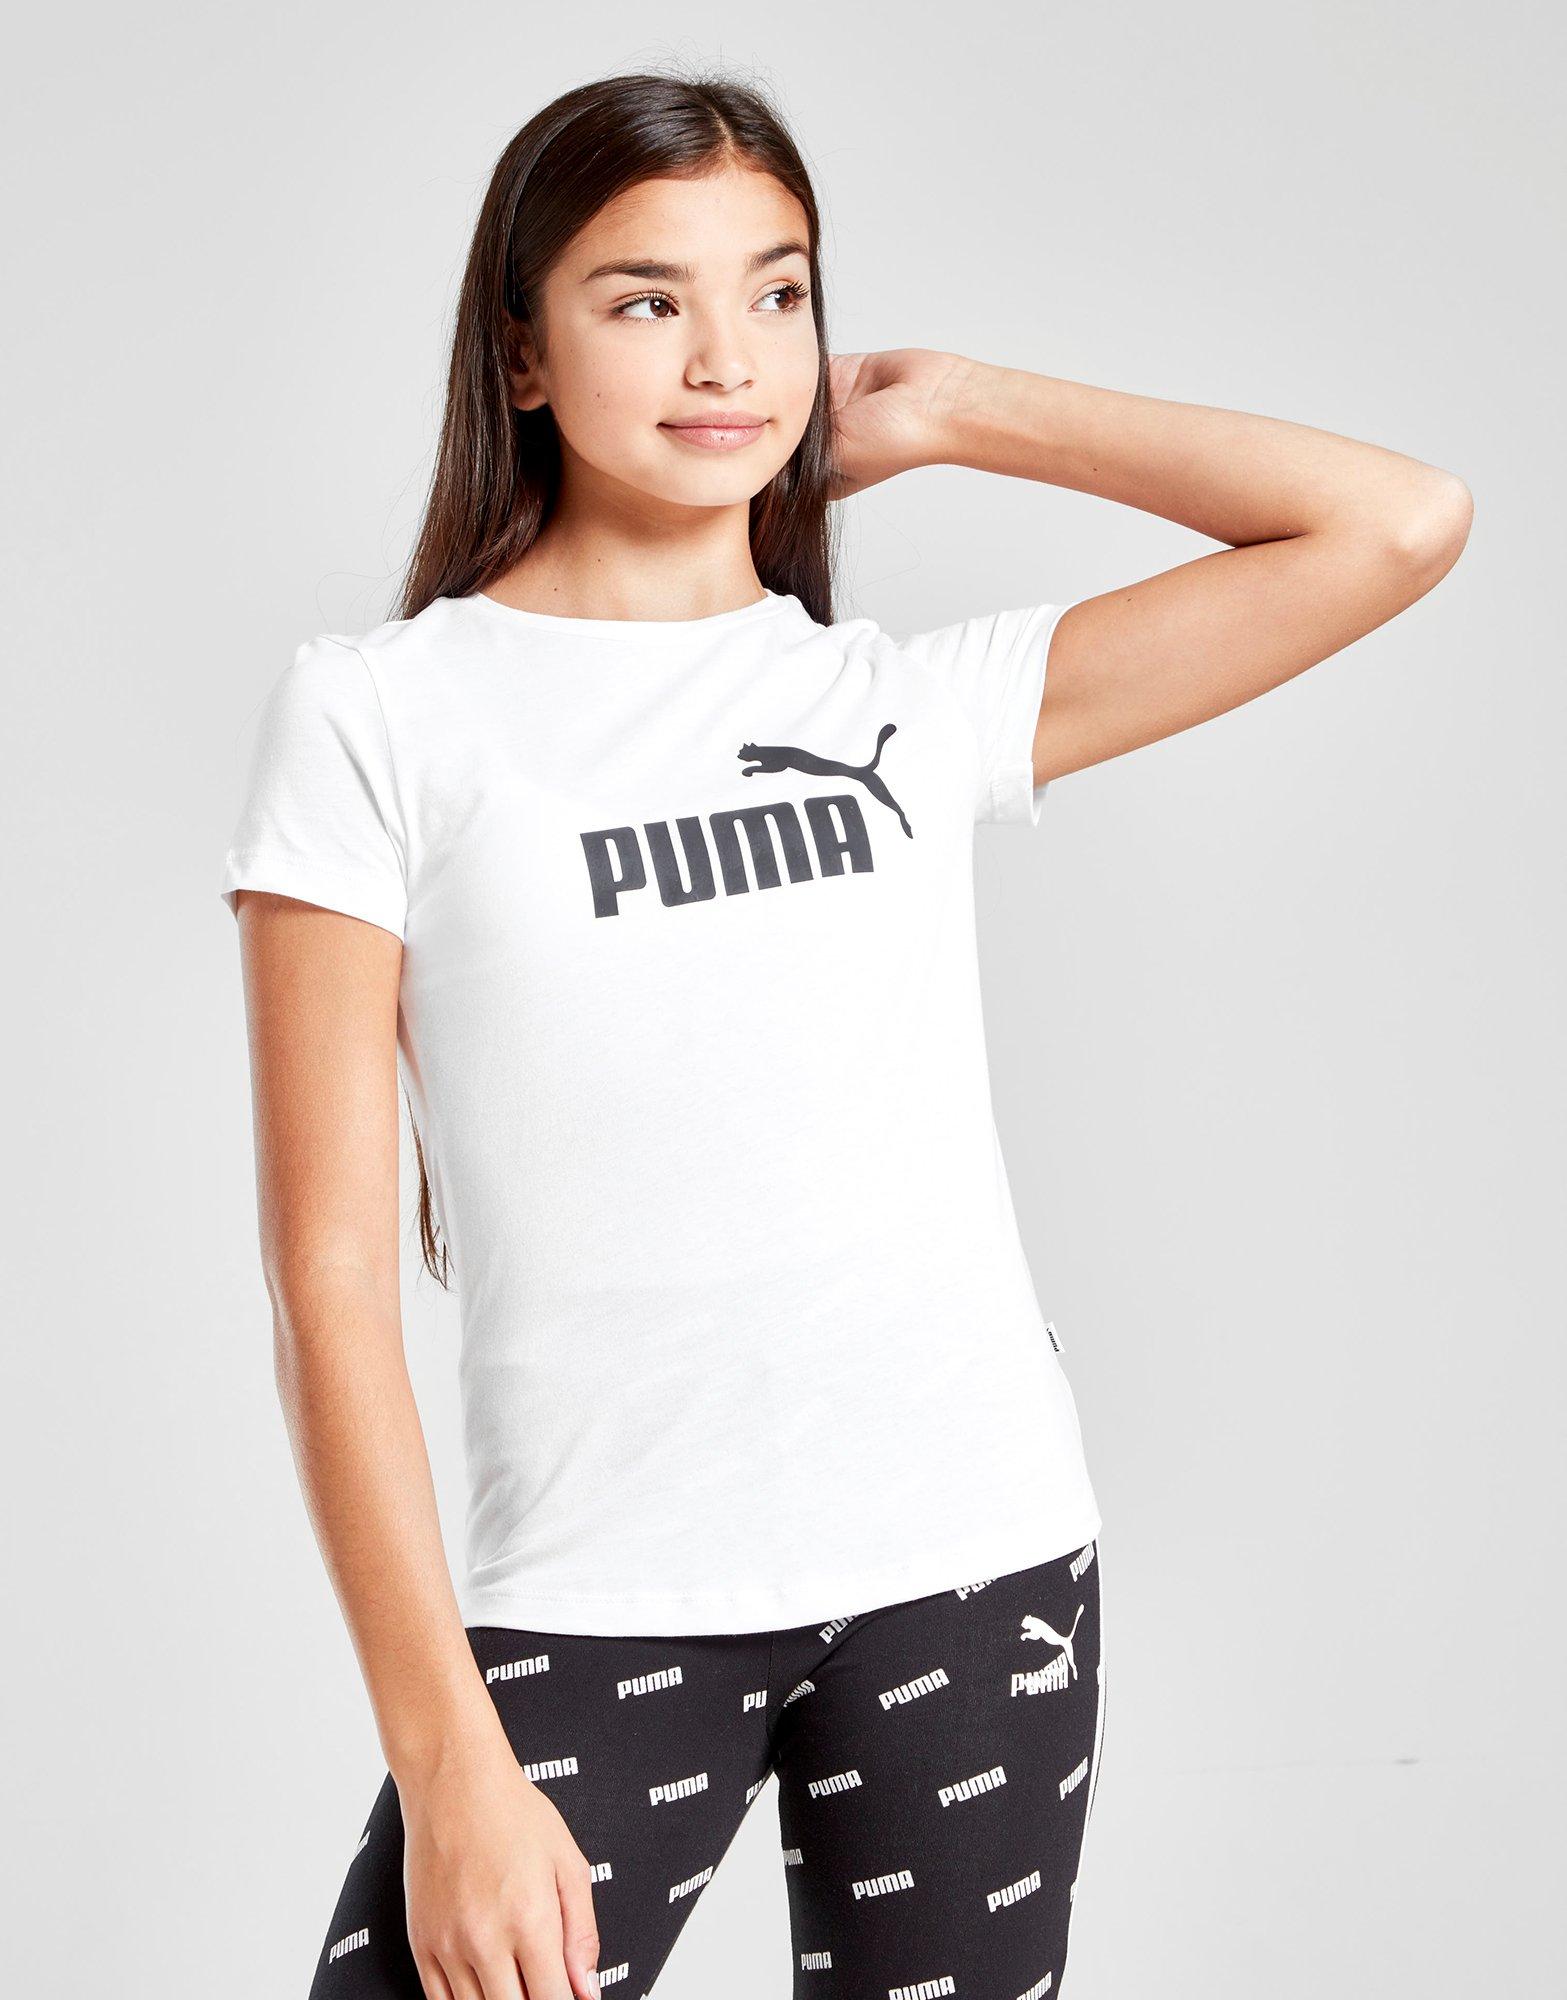 puma outfits for juniors